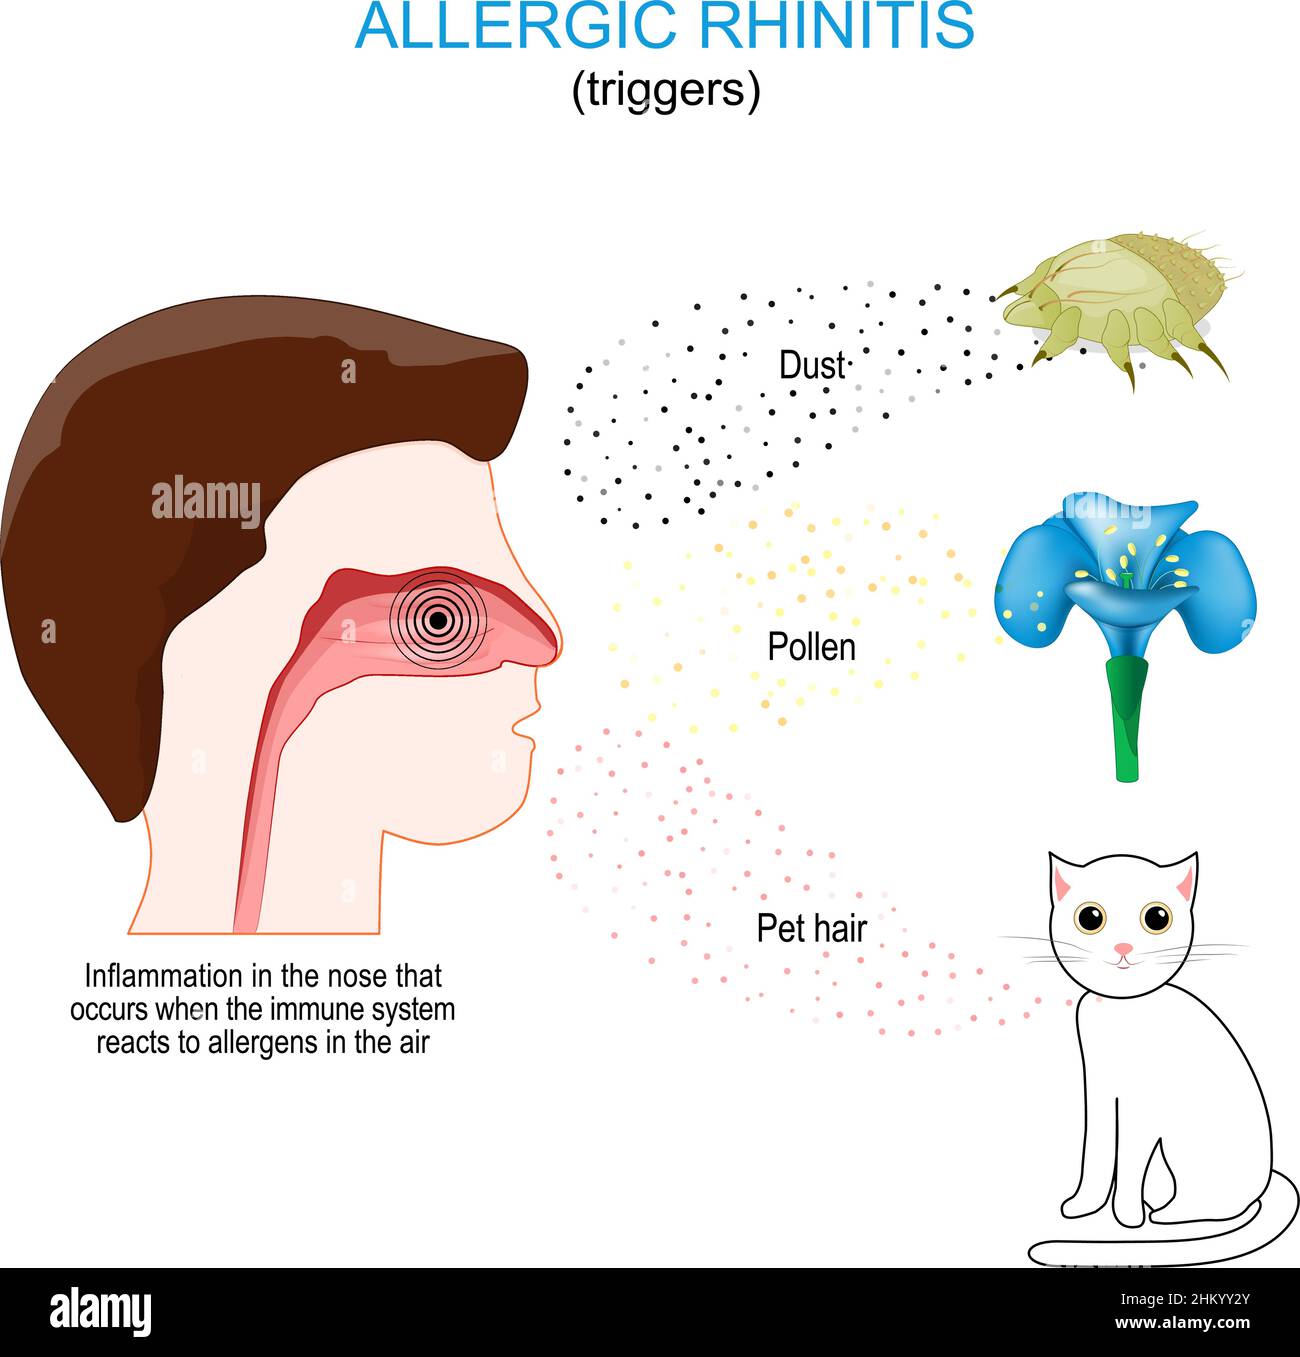 Rhinite allergique.Inflammation du nez qui se produit lorsque le système immunitaire réagit aux allergènes dans l'air. Déclencheurs : poussière, pollen et poils d'animaux Illustration de Vecteur